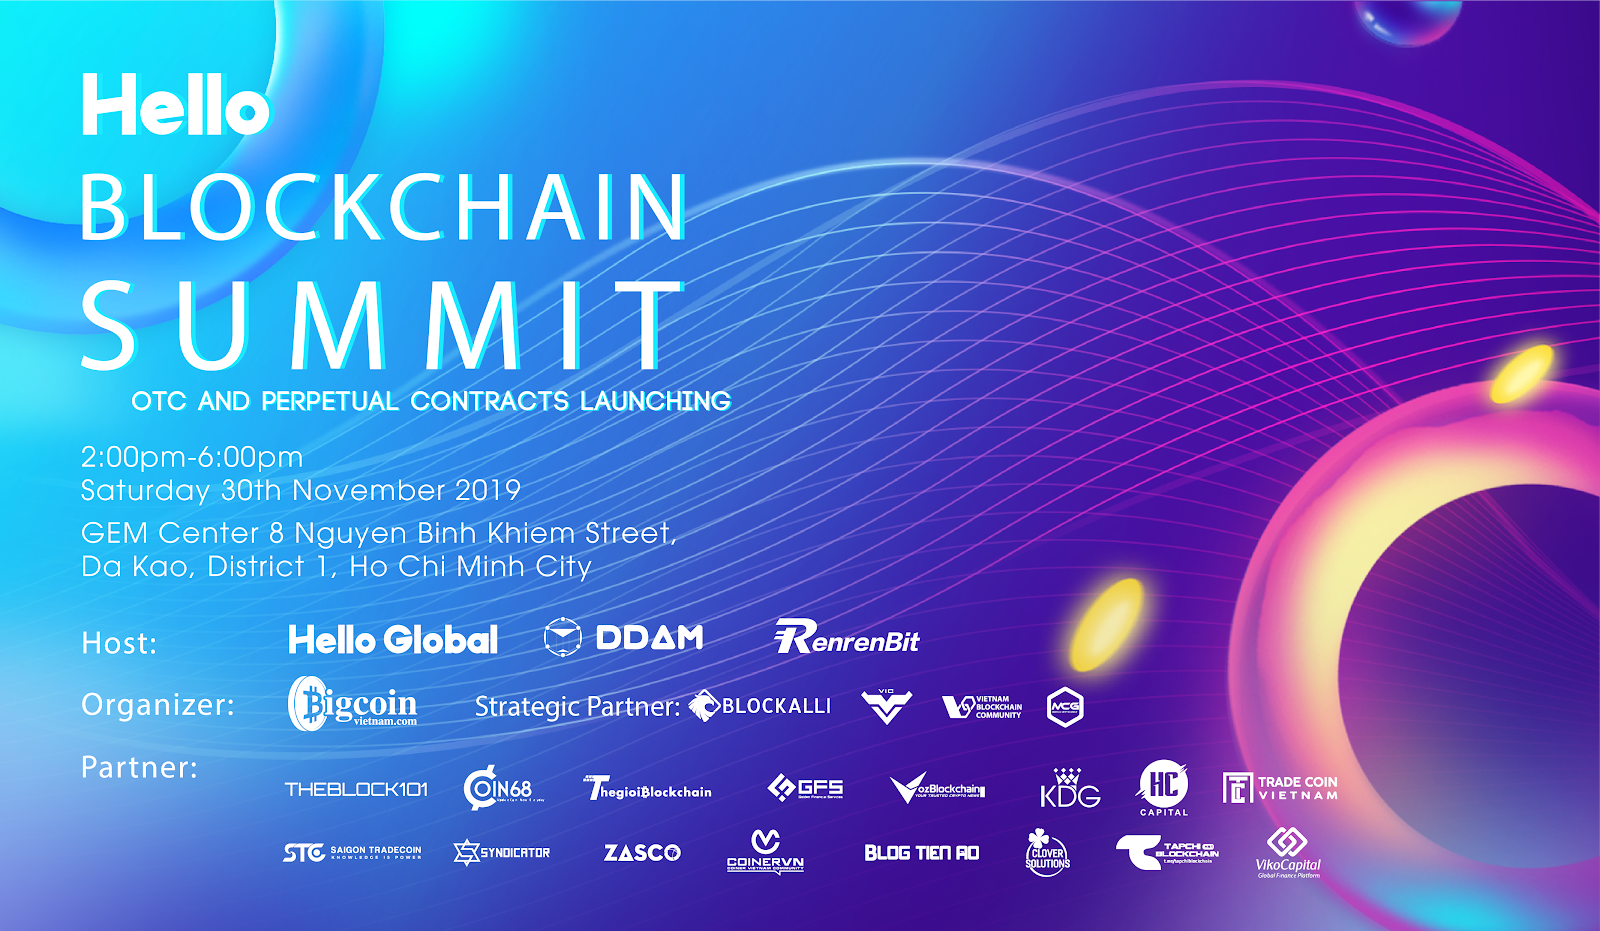 Hello Blockchain Summit